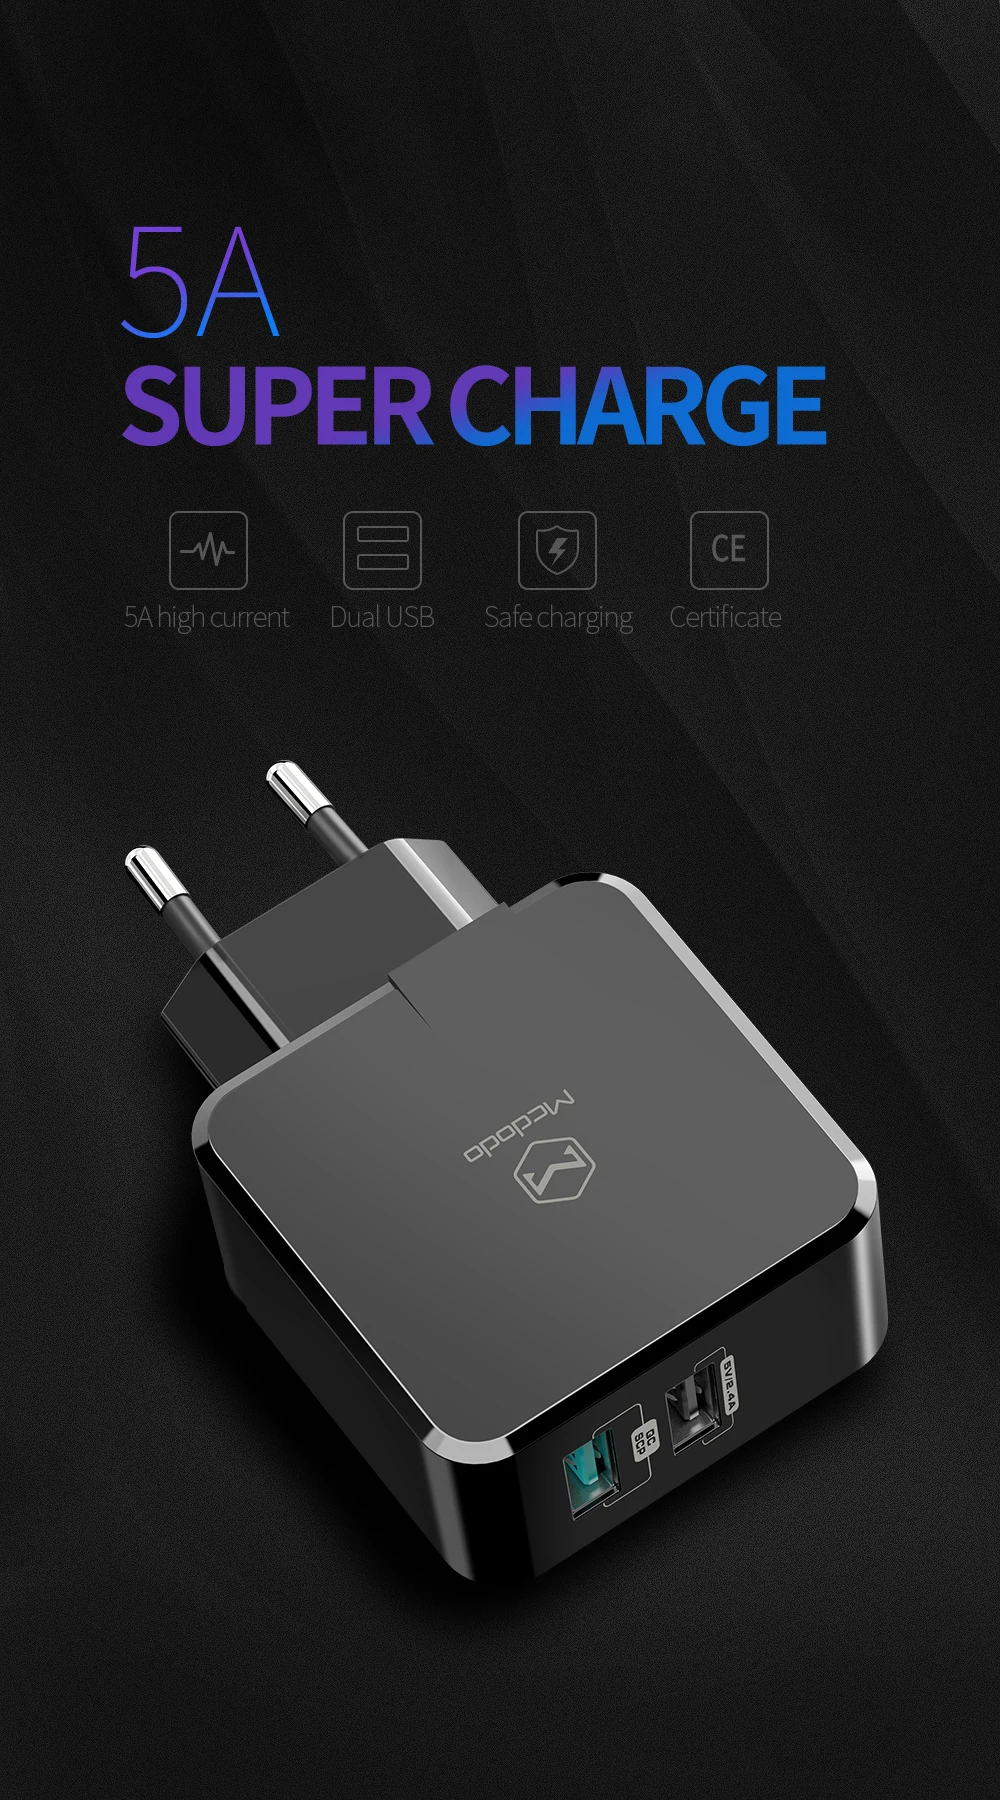 ЕС/Великобритания адаптер USB зарядное устройство 5A супер быстрая зарядка для HUAWEI mate 20 pro P20 Honor 10 зарядное устройство мобильного телефона для iPhone samsung S9